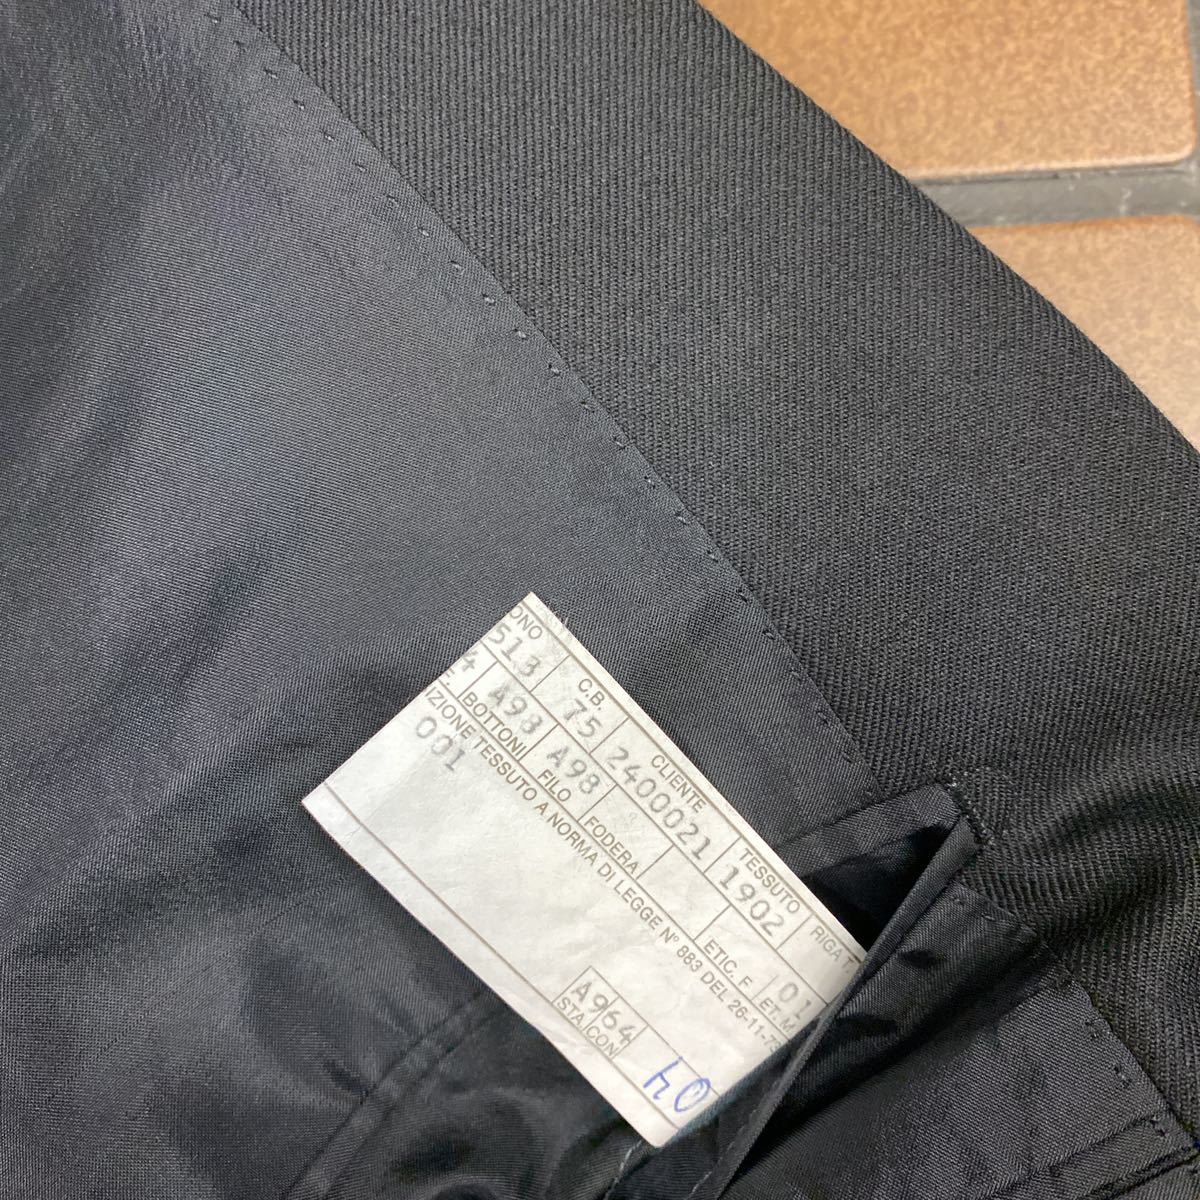  новый товар супер-скидка Италия производства REDAELLI высококлассный бренд товар с некоторыми замечаниями смокинг pi-k этикетка черный костюм выставить размер 48 new wool 100% AMF